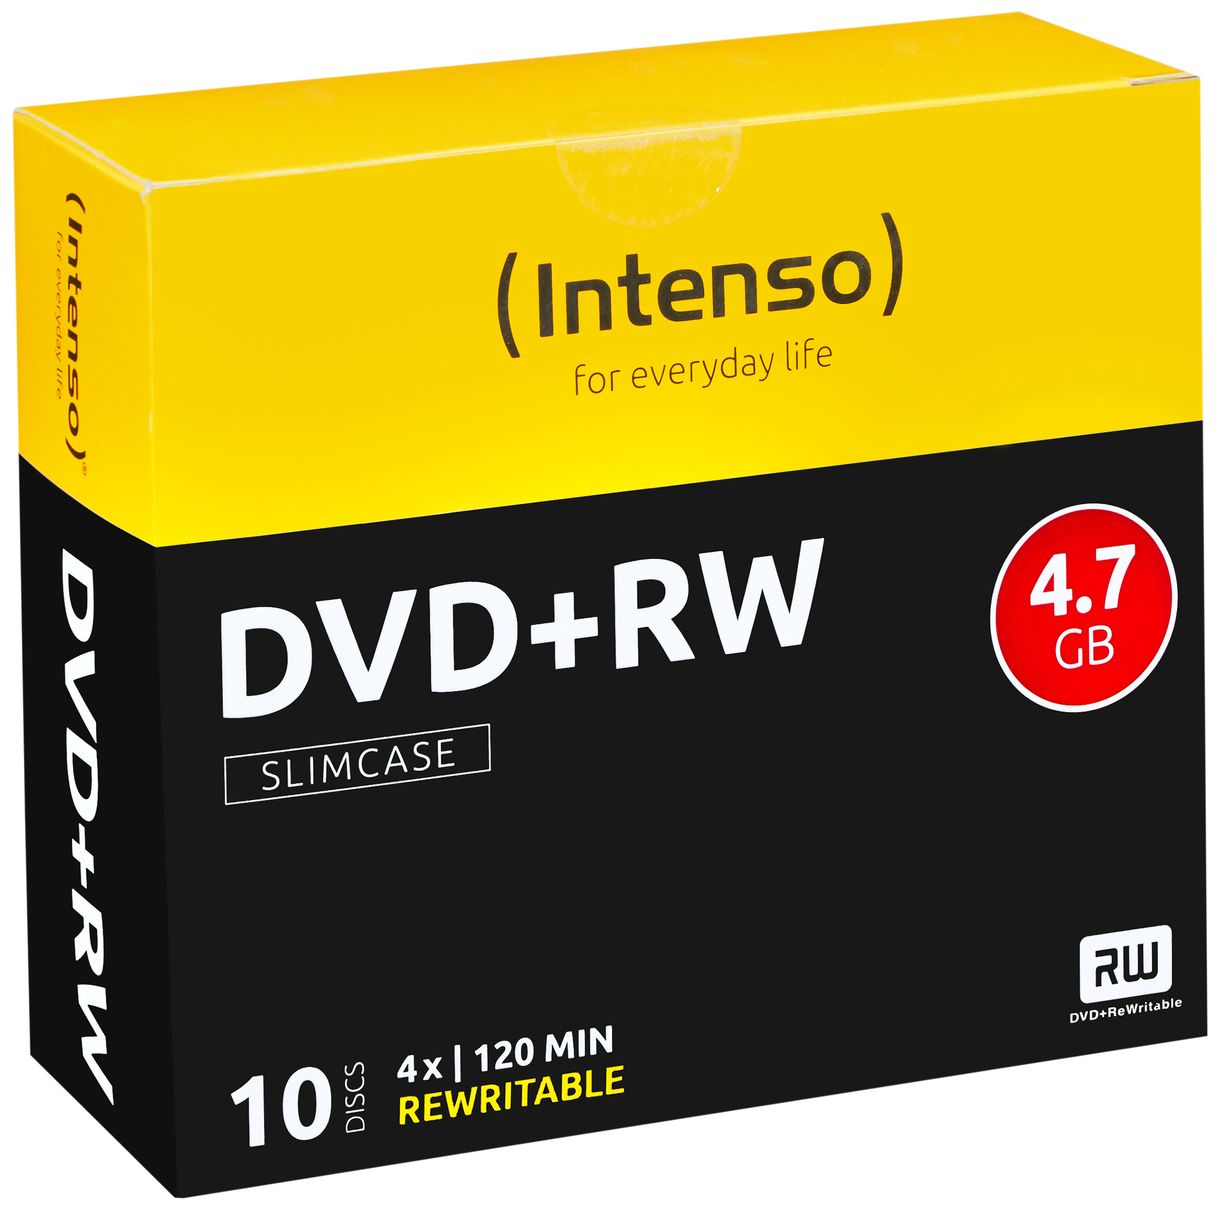 DVD+RW 4.7GB, 4x 